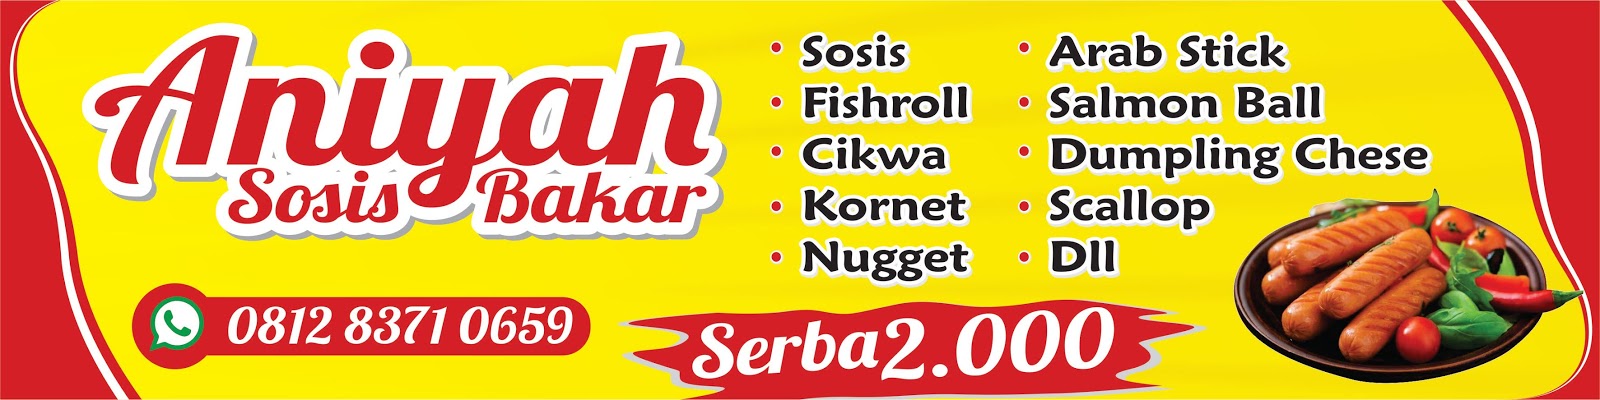 Contoh Spanduk Sosis Bakar ( aniyah sosis bakar ) - Agen87